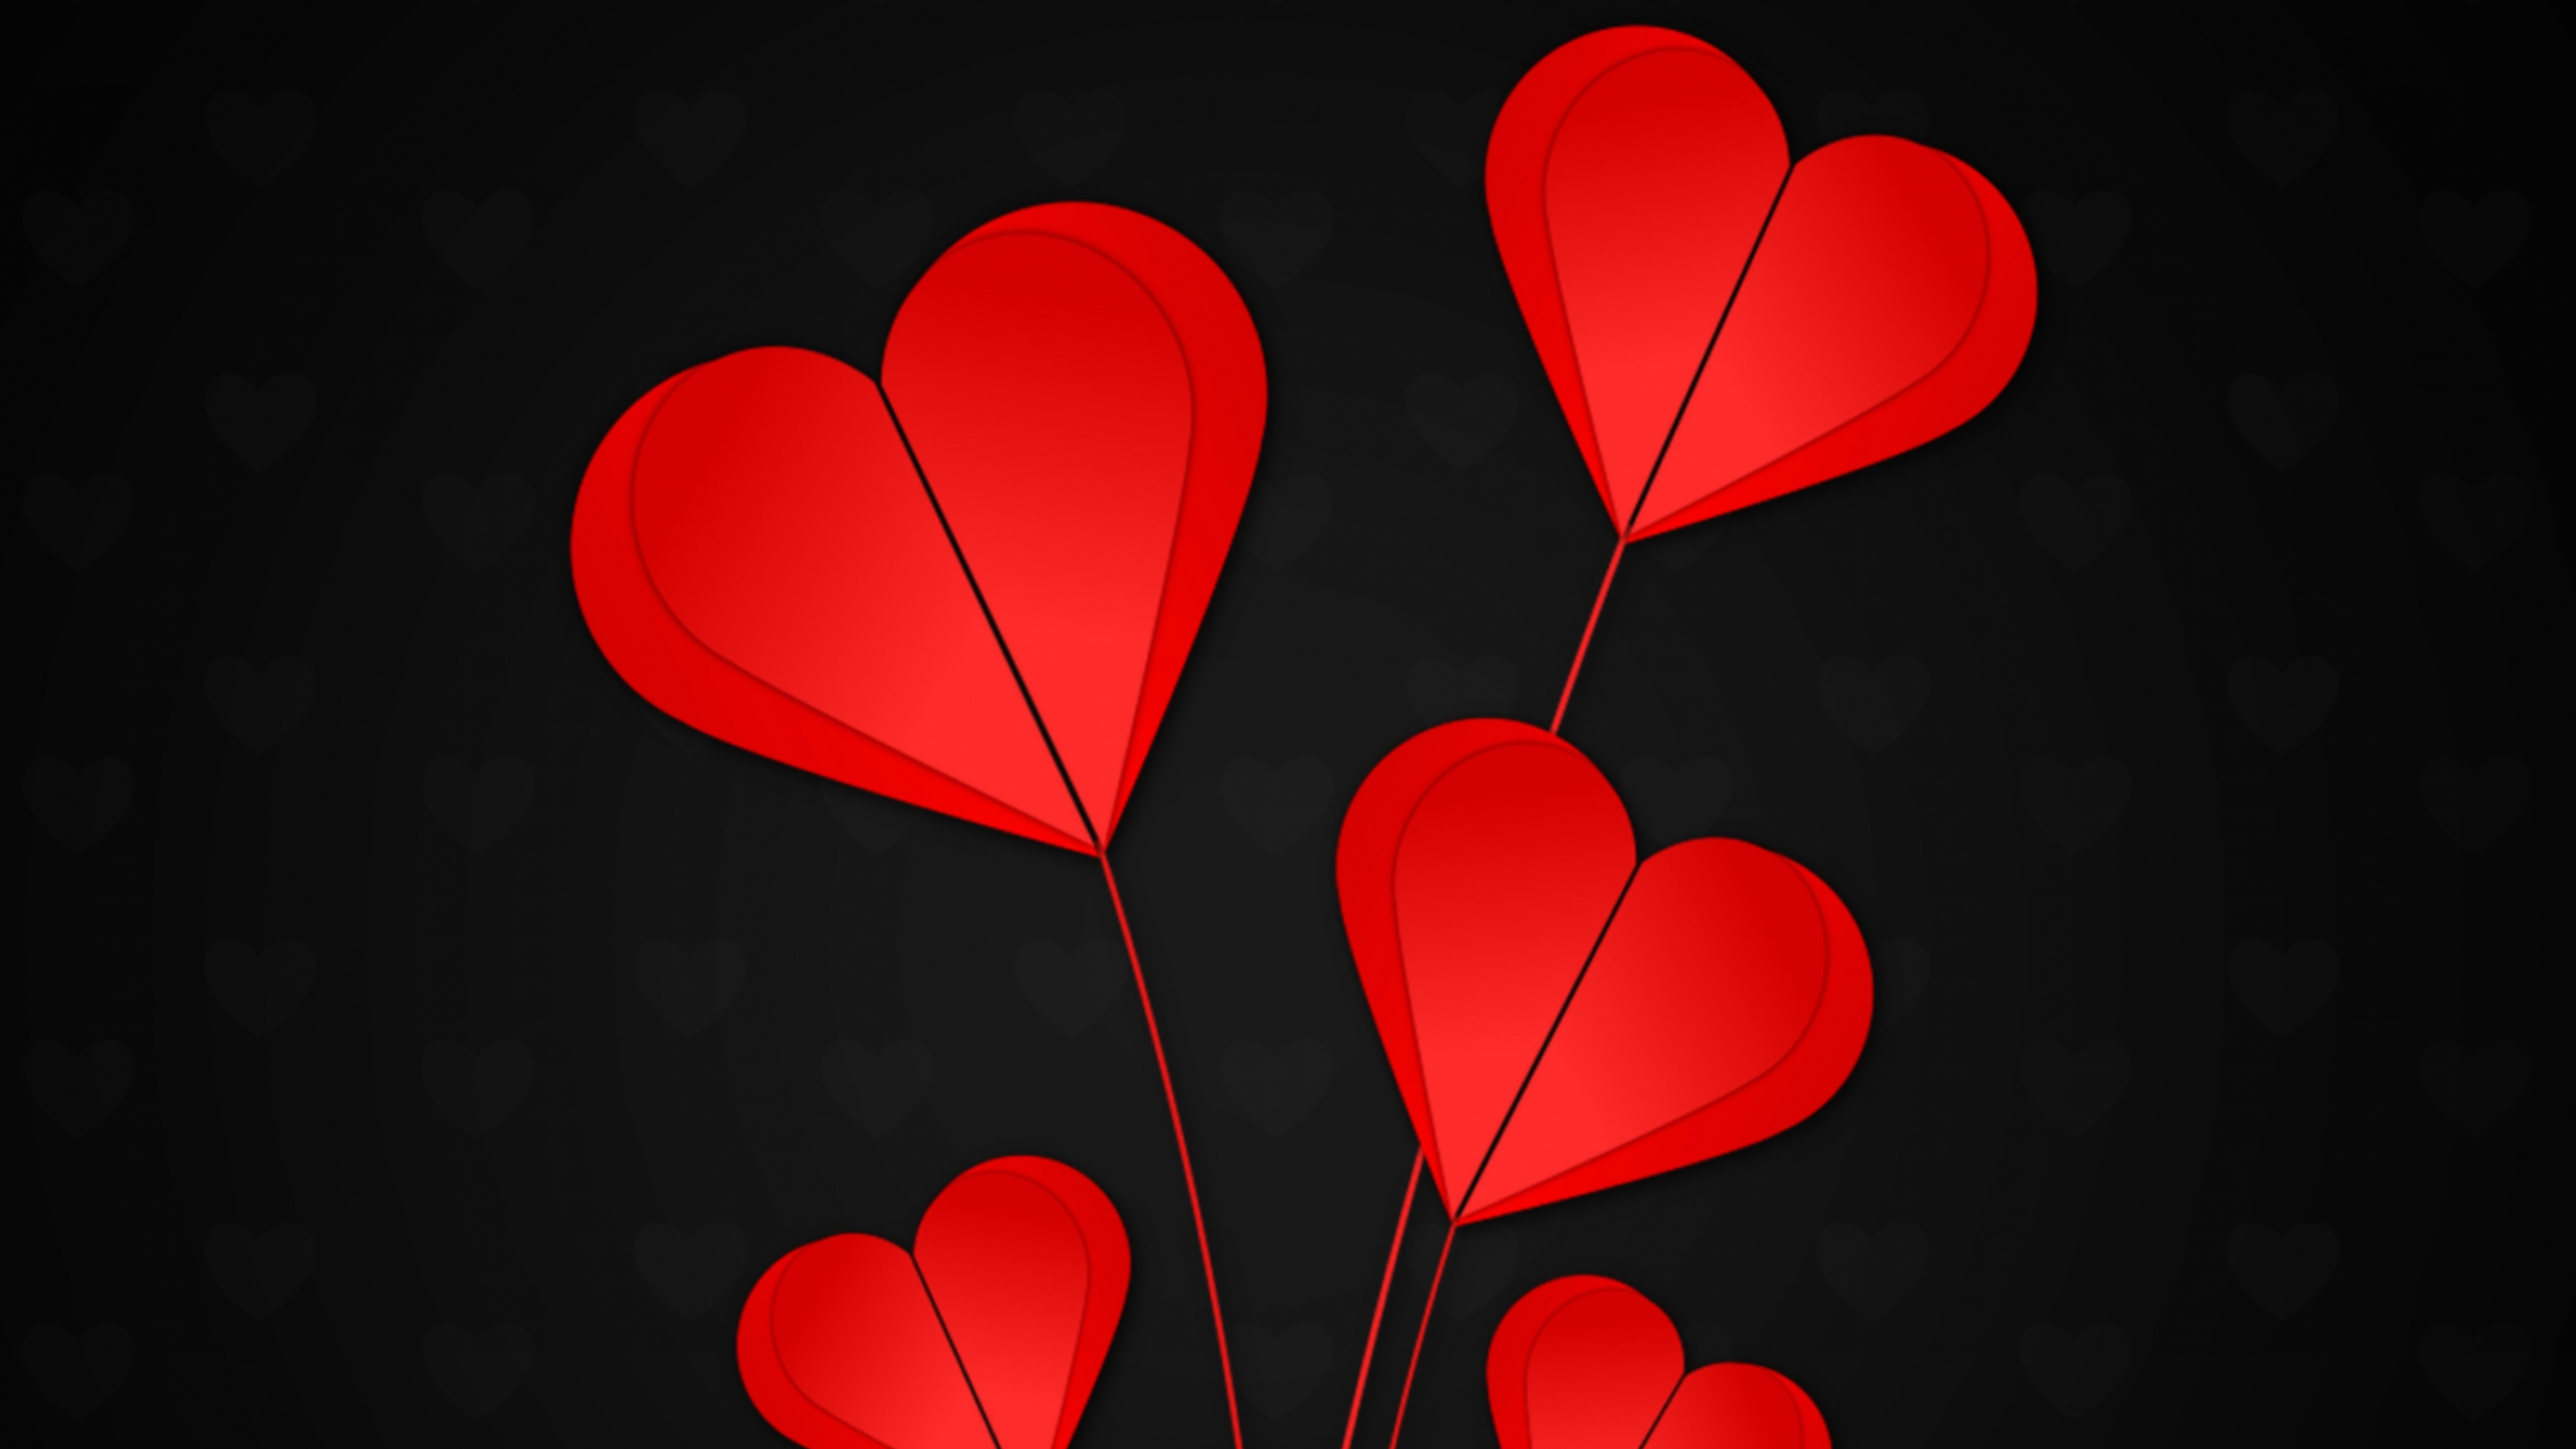 Coraz, Rojo, Pétalo, Amor, el Día de San Valentín. Wallpaper in 3840x2160 Resolution